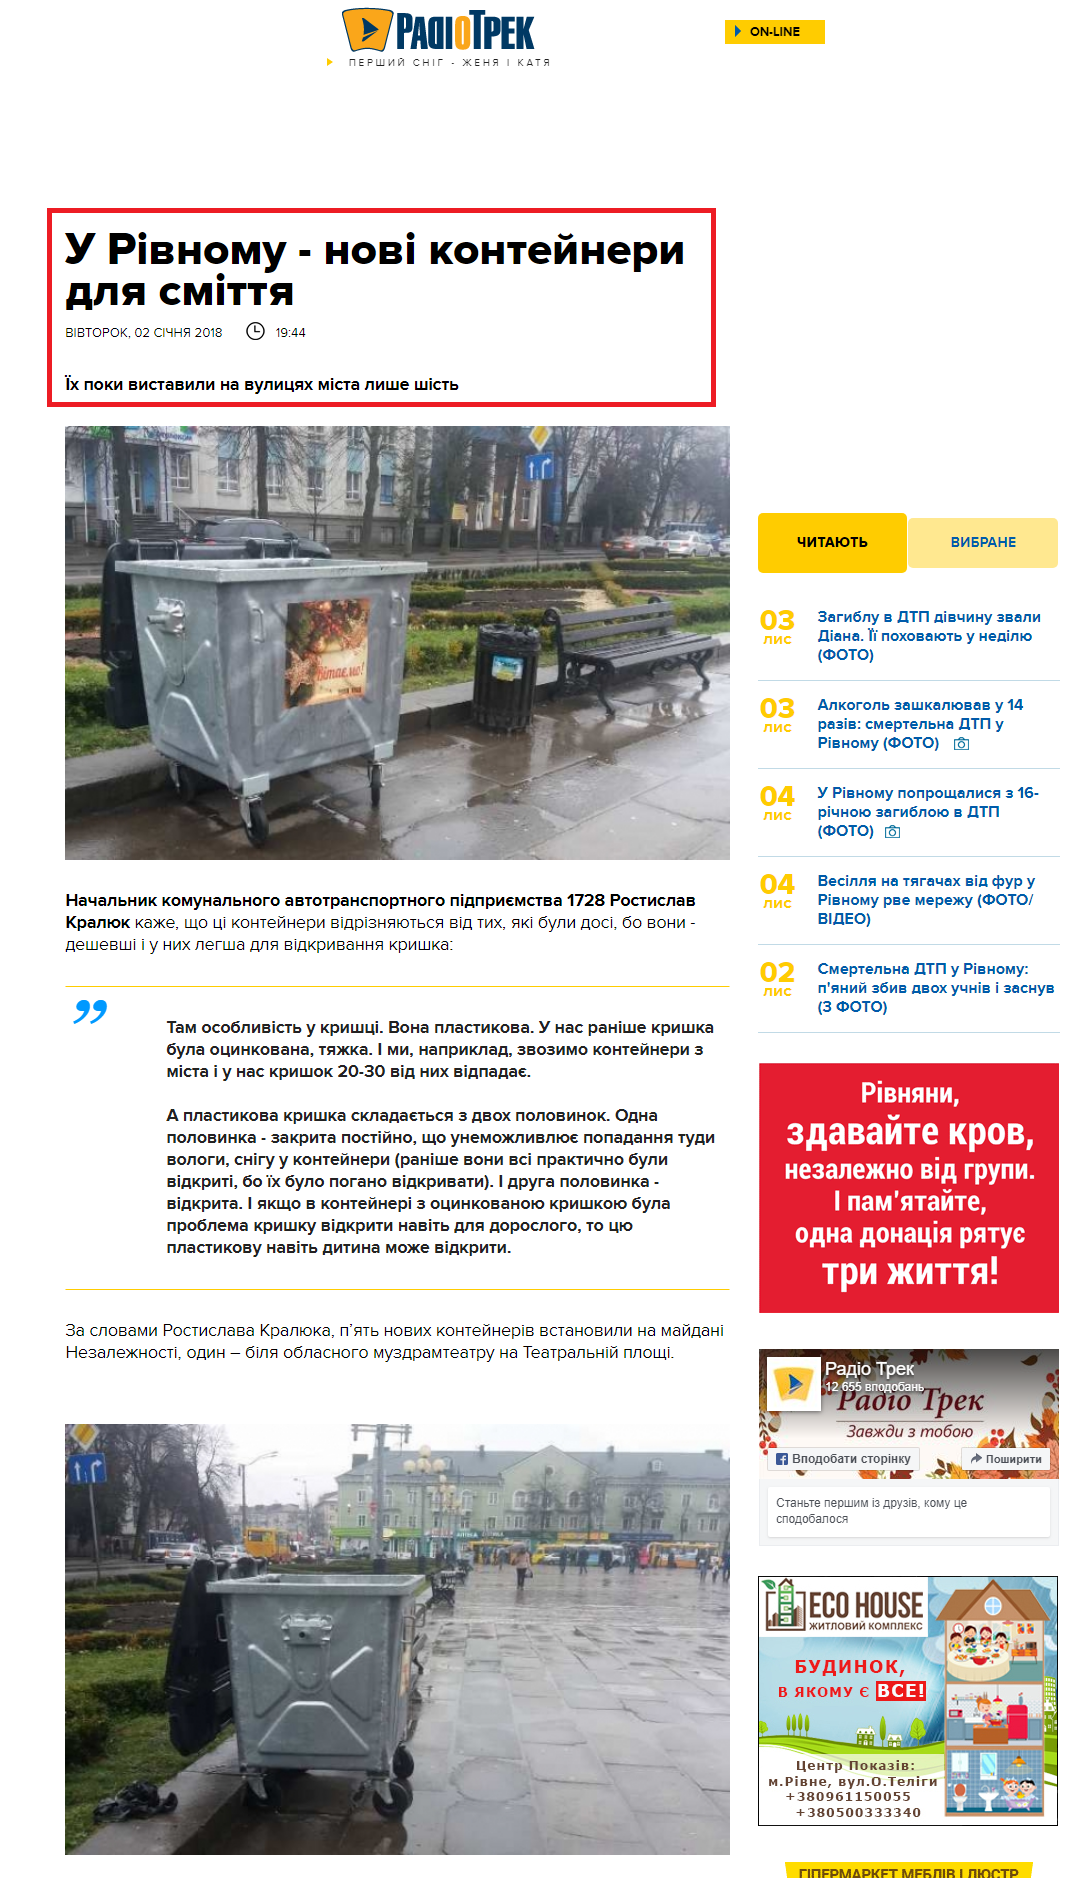 http://radiotrek.rv.ua/news/u_rivnomu__novi_konteynery_dlya_smittya_222381.html